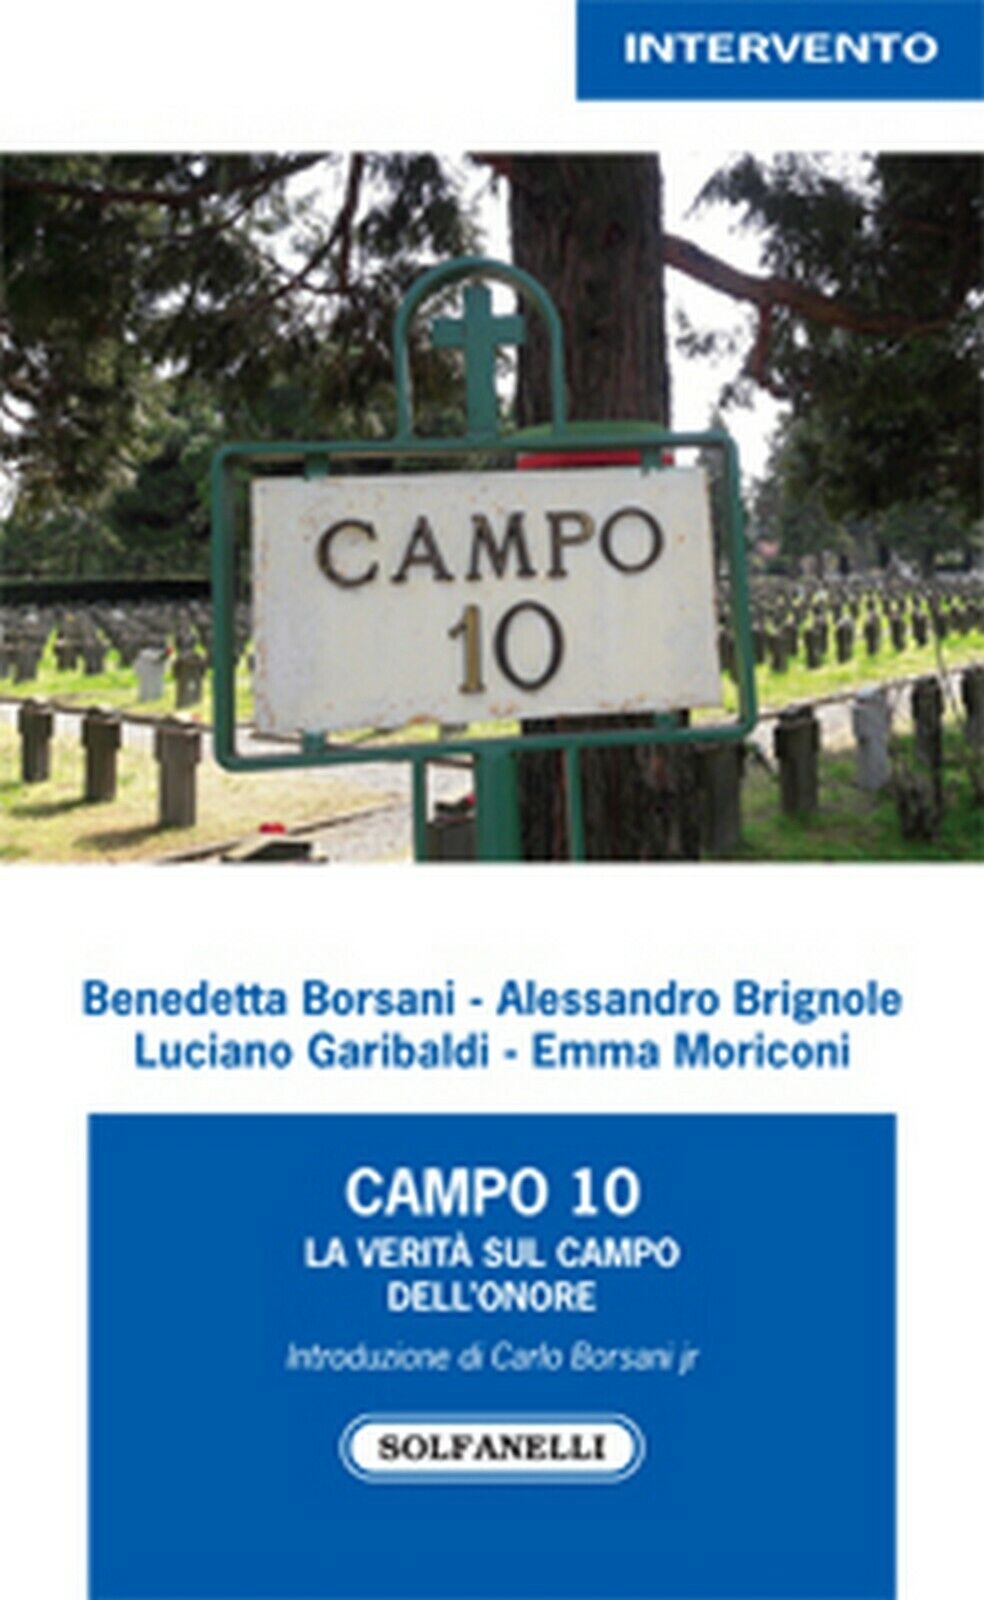 CAMPO 10 La verit? sul Campo delL'Onore, AA. VV., Solfarelli Edizioni